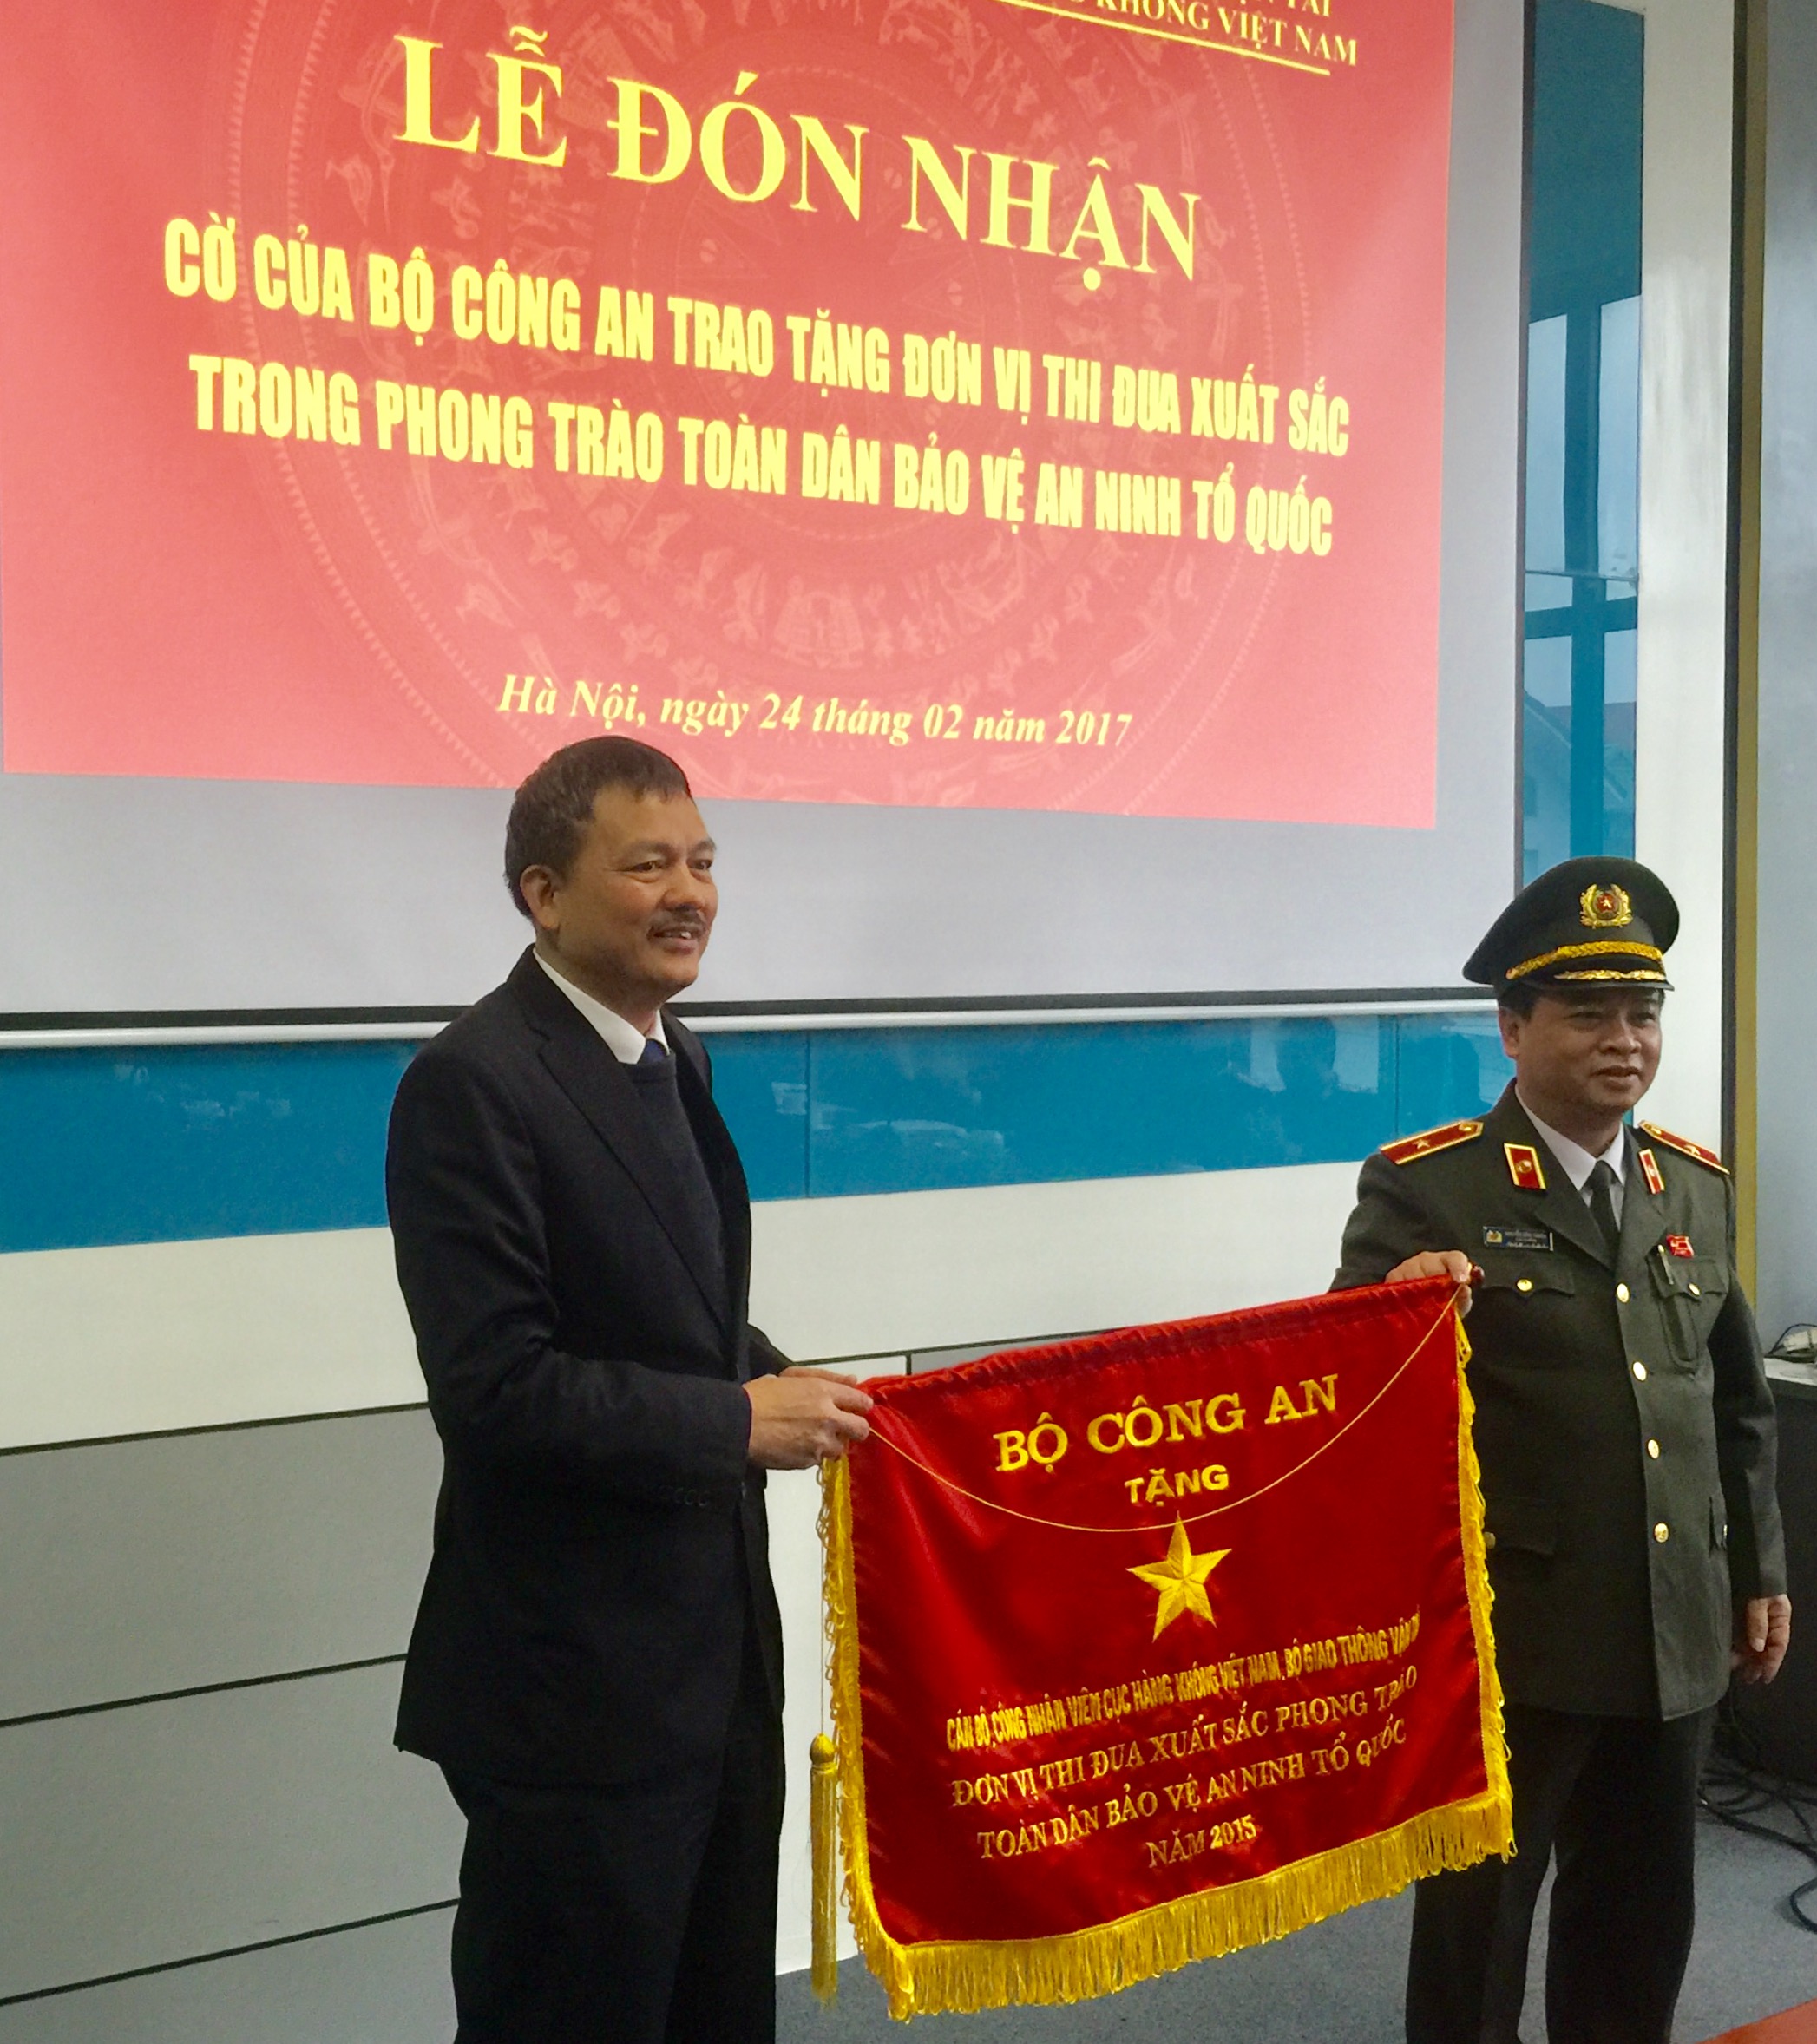 Bộ Công an trao tặng cờ thi đua xuất sắc cho Cục Hàng không Việt Nam